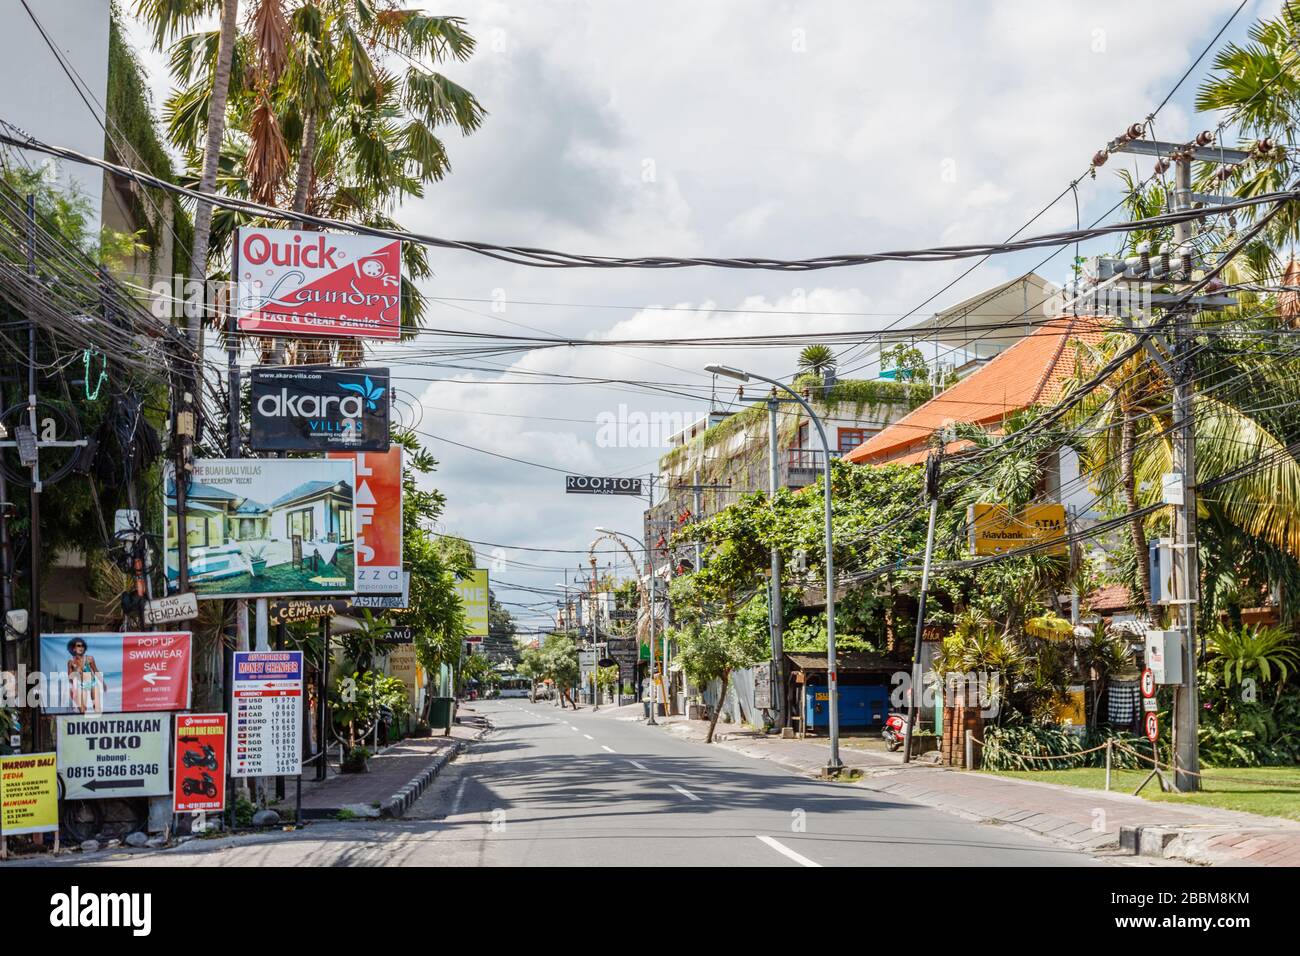 Avril 01, 2020. Rues vides de Bali. Quarantaine pour COVID-19. Petitenget,  l'un des quartiers touristiques les plus populaires de Bali. Indonésie  Photo Stock - Alamy